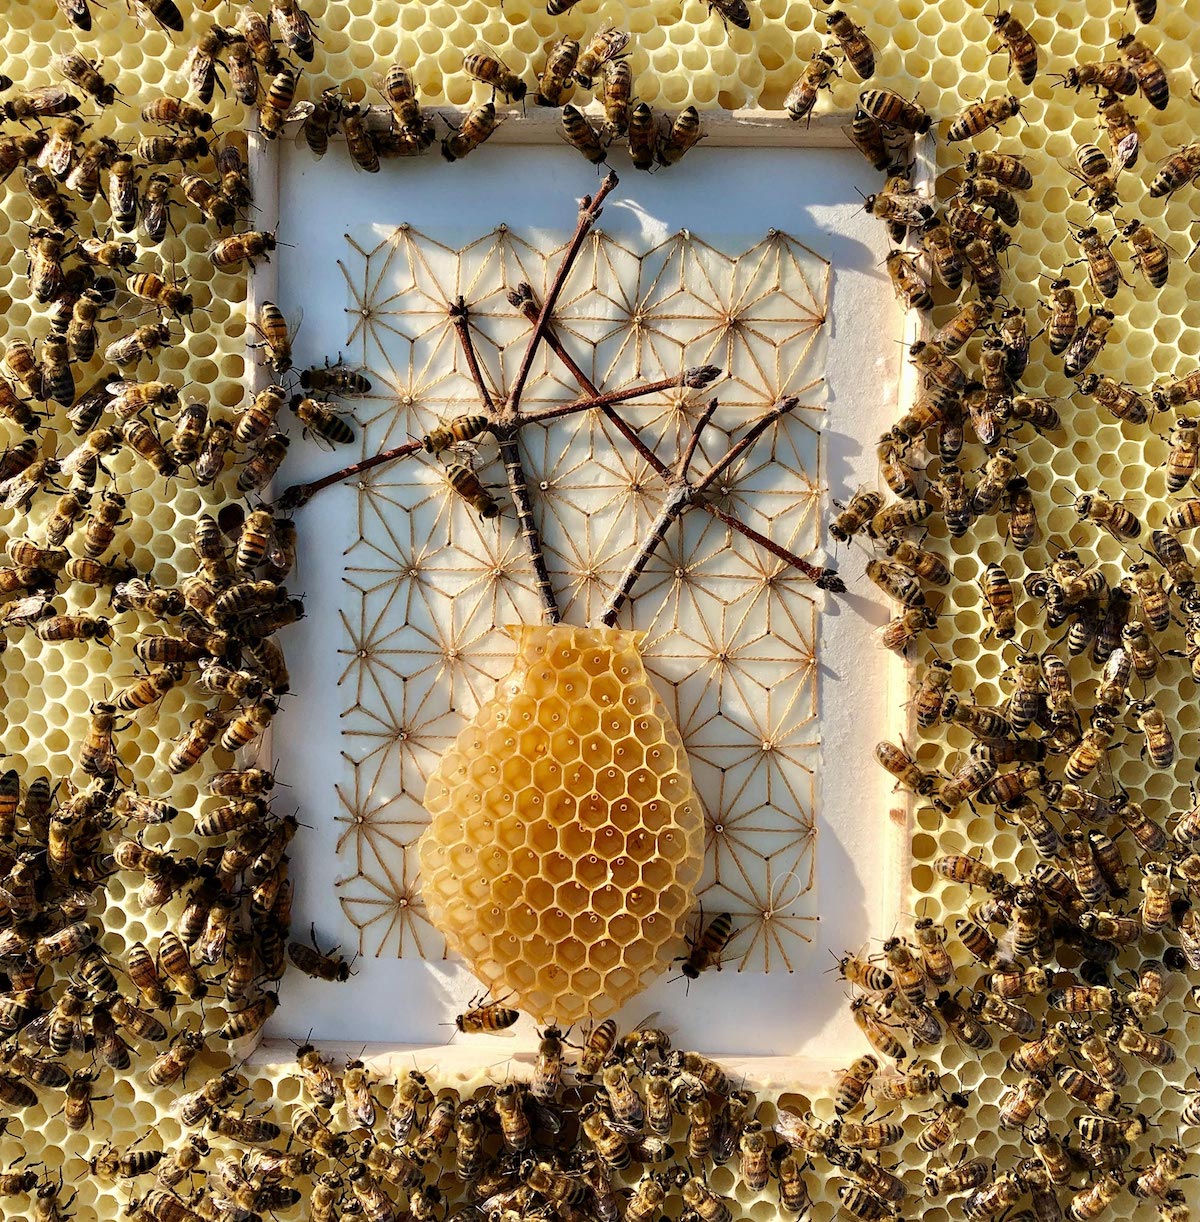 Mixed Media Honeycomb by Ava Roth